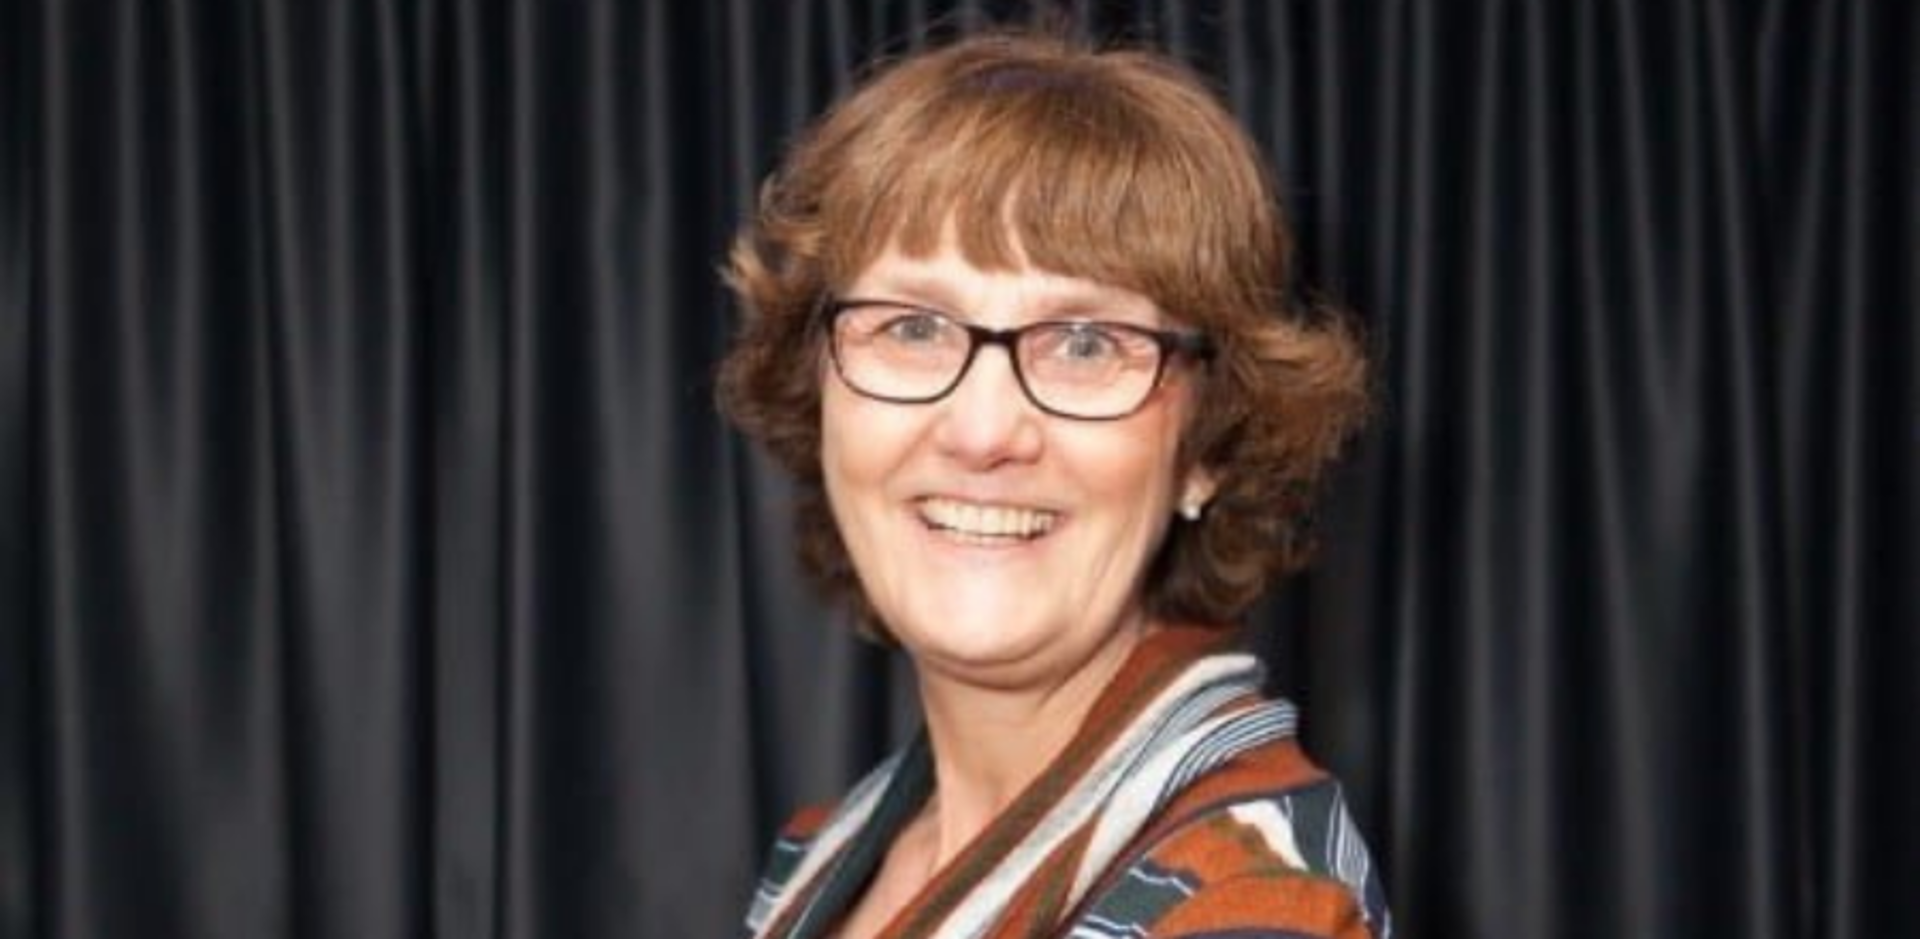 Professor Lesley Price